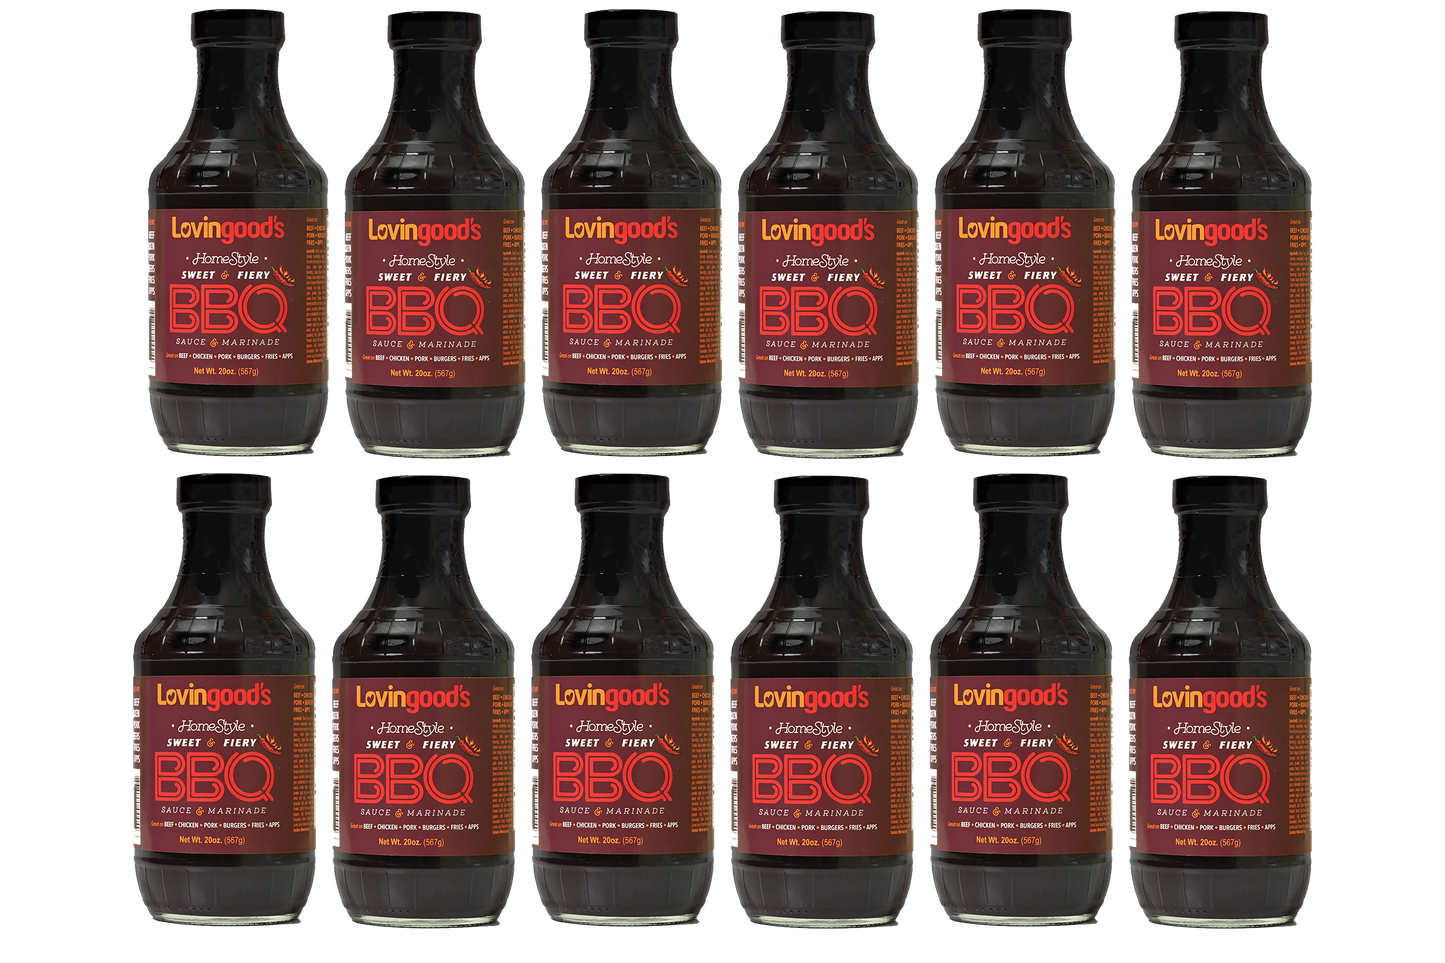 Lovingood's® Sweet & Fiery BBQ Sauce - 20 oz. Bottles